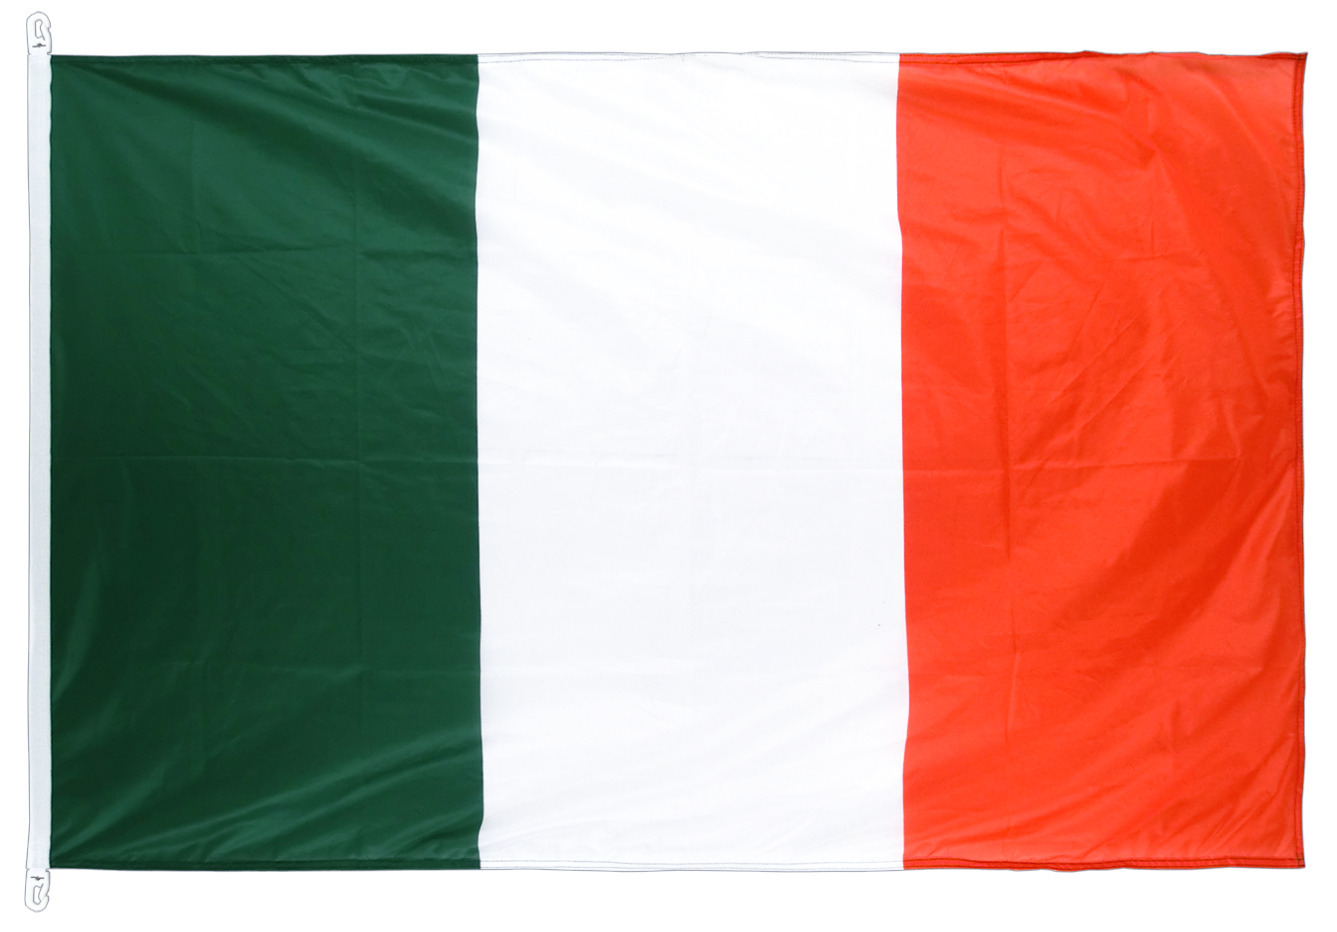 Код флага италии. Флаг Италии. Флаг 90х135 см. CLN Италия флаг. Одежда с итальянским флагом.